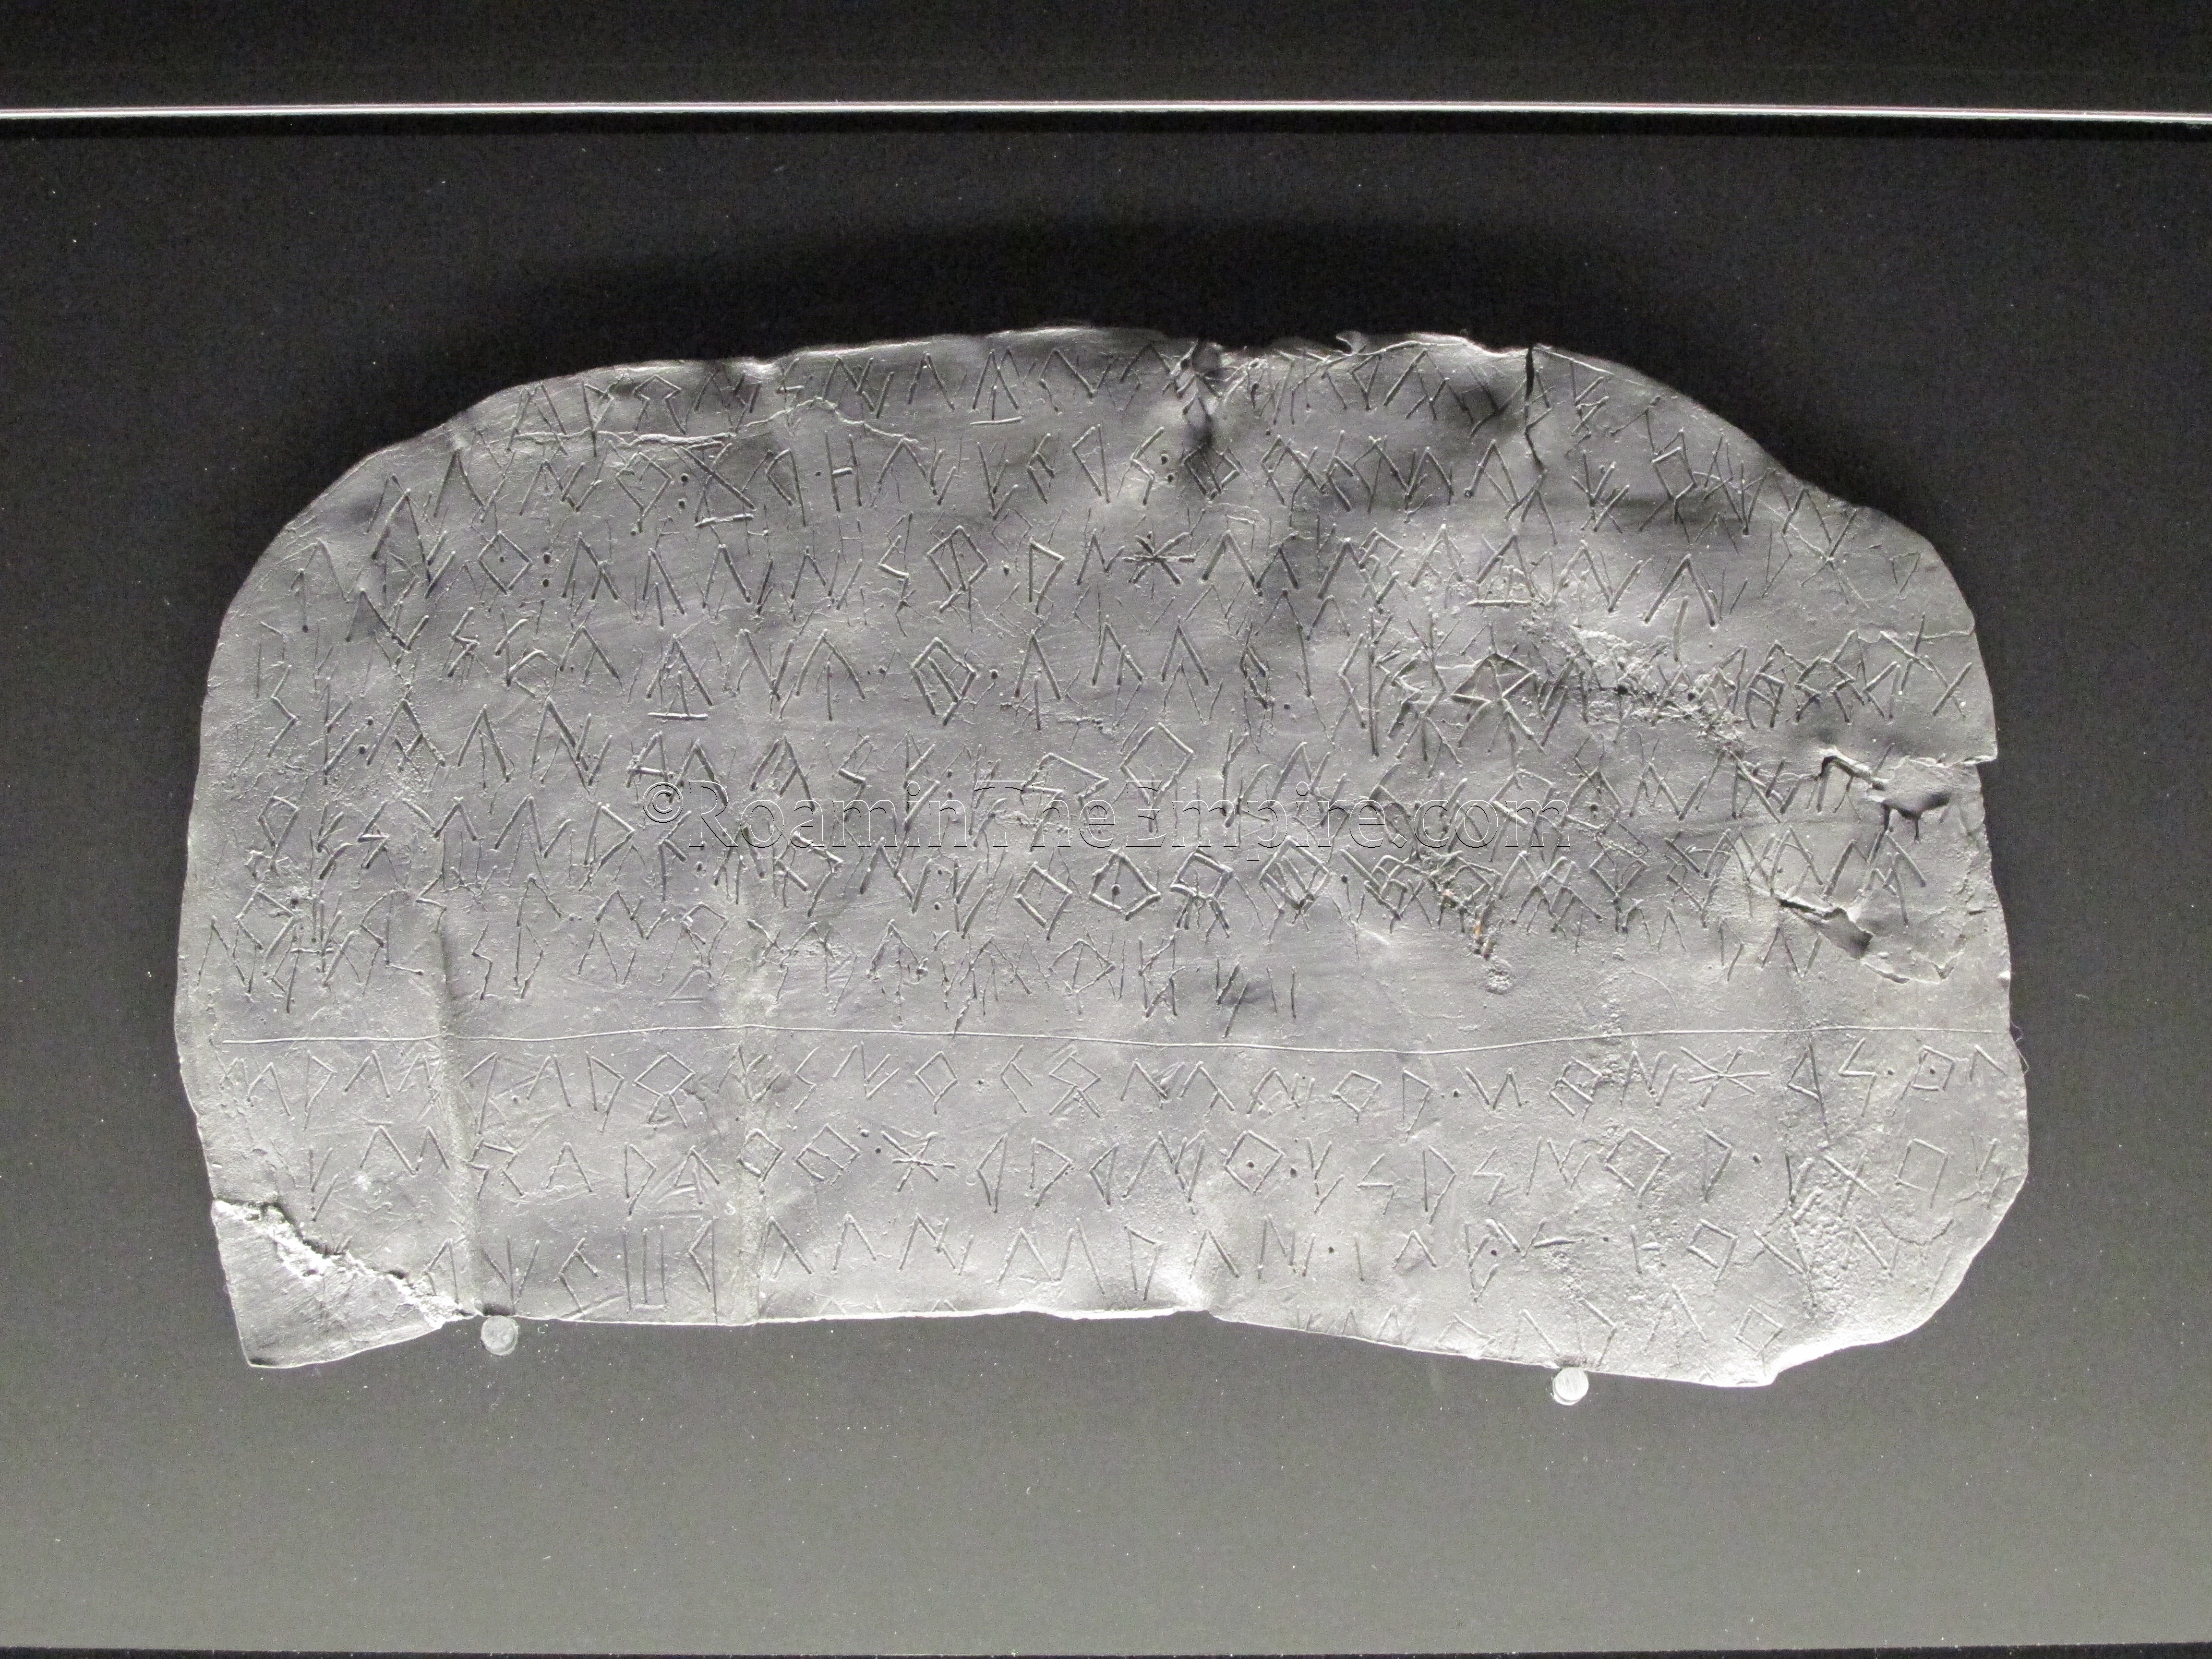 Iberian inscription on a lead tablet.